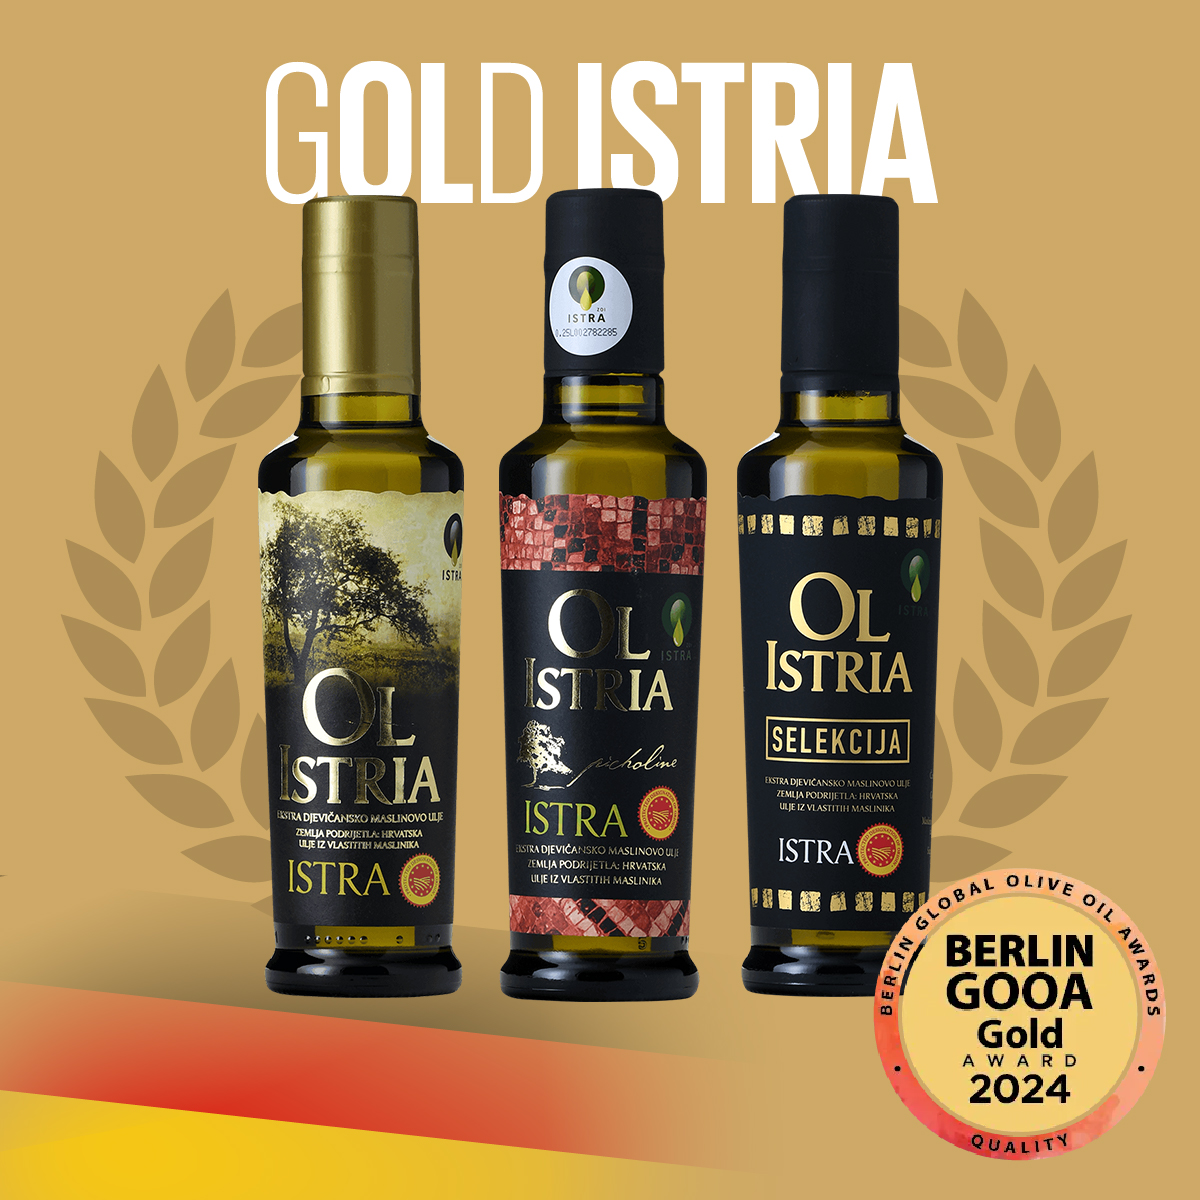 OL ISTRIA osvojila zlatnu medalju na Berlinskom Global Olive Oil Awards 2024